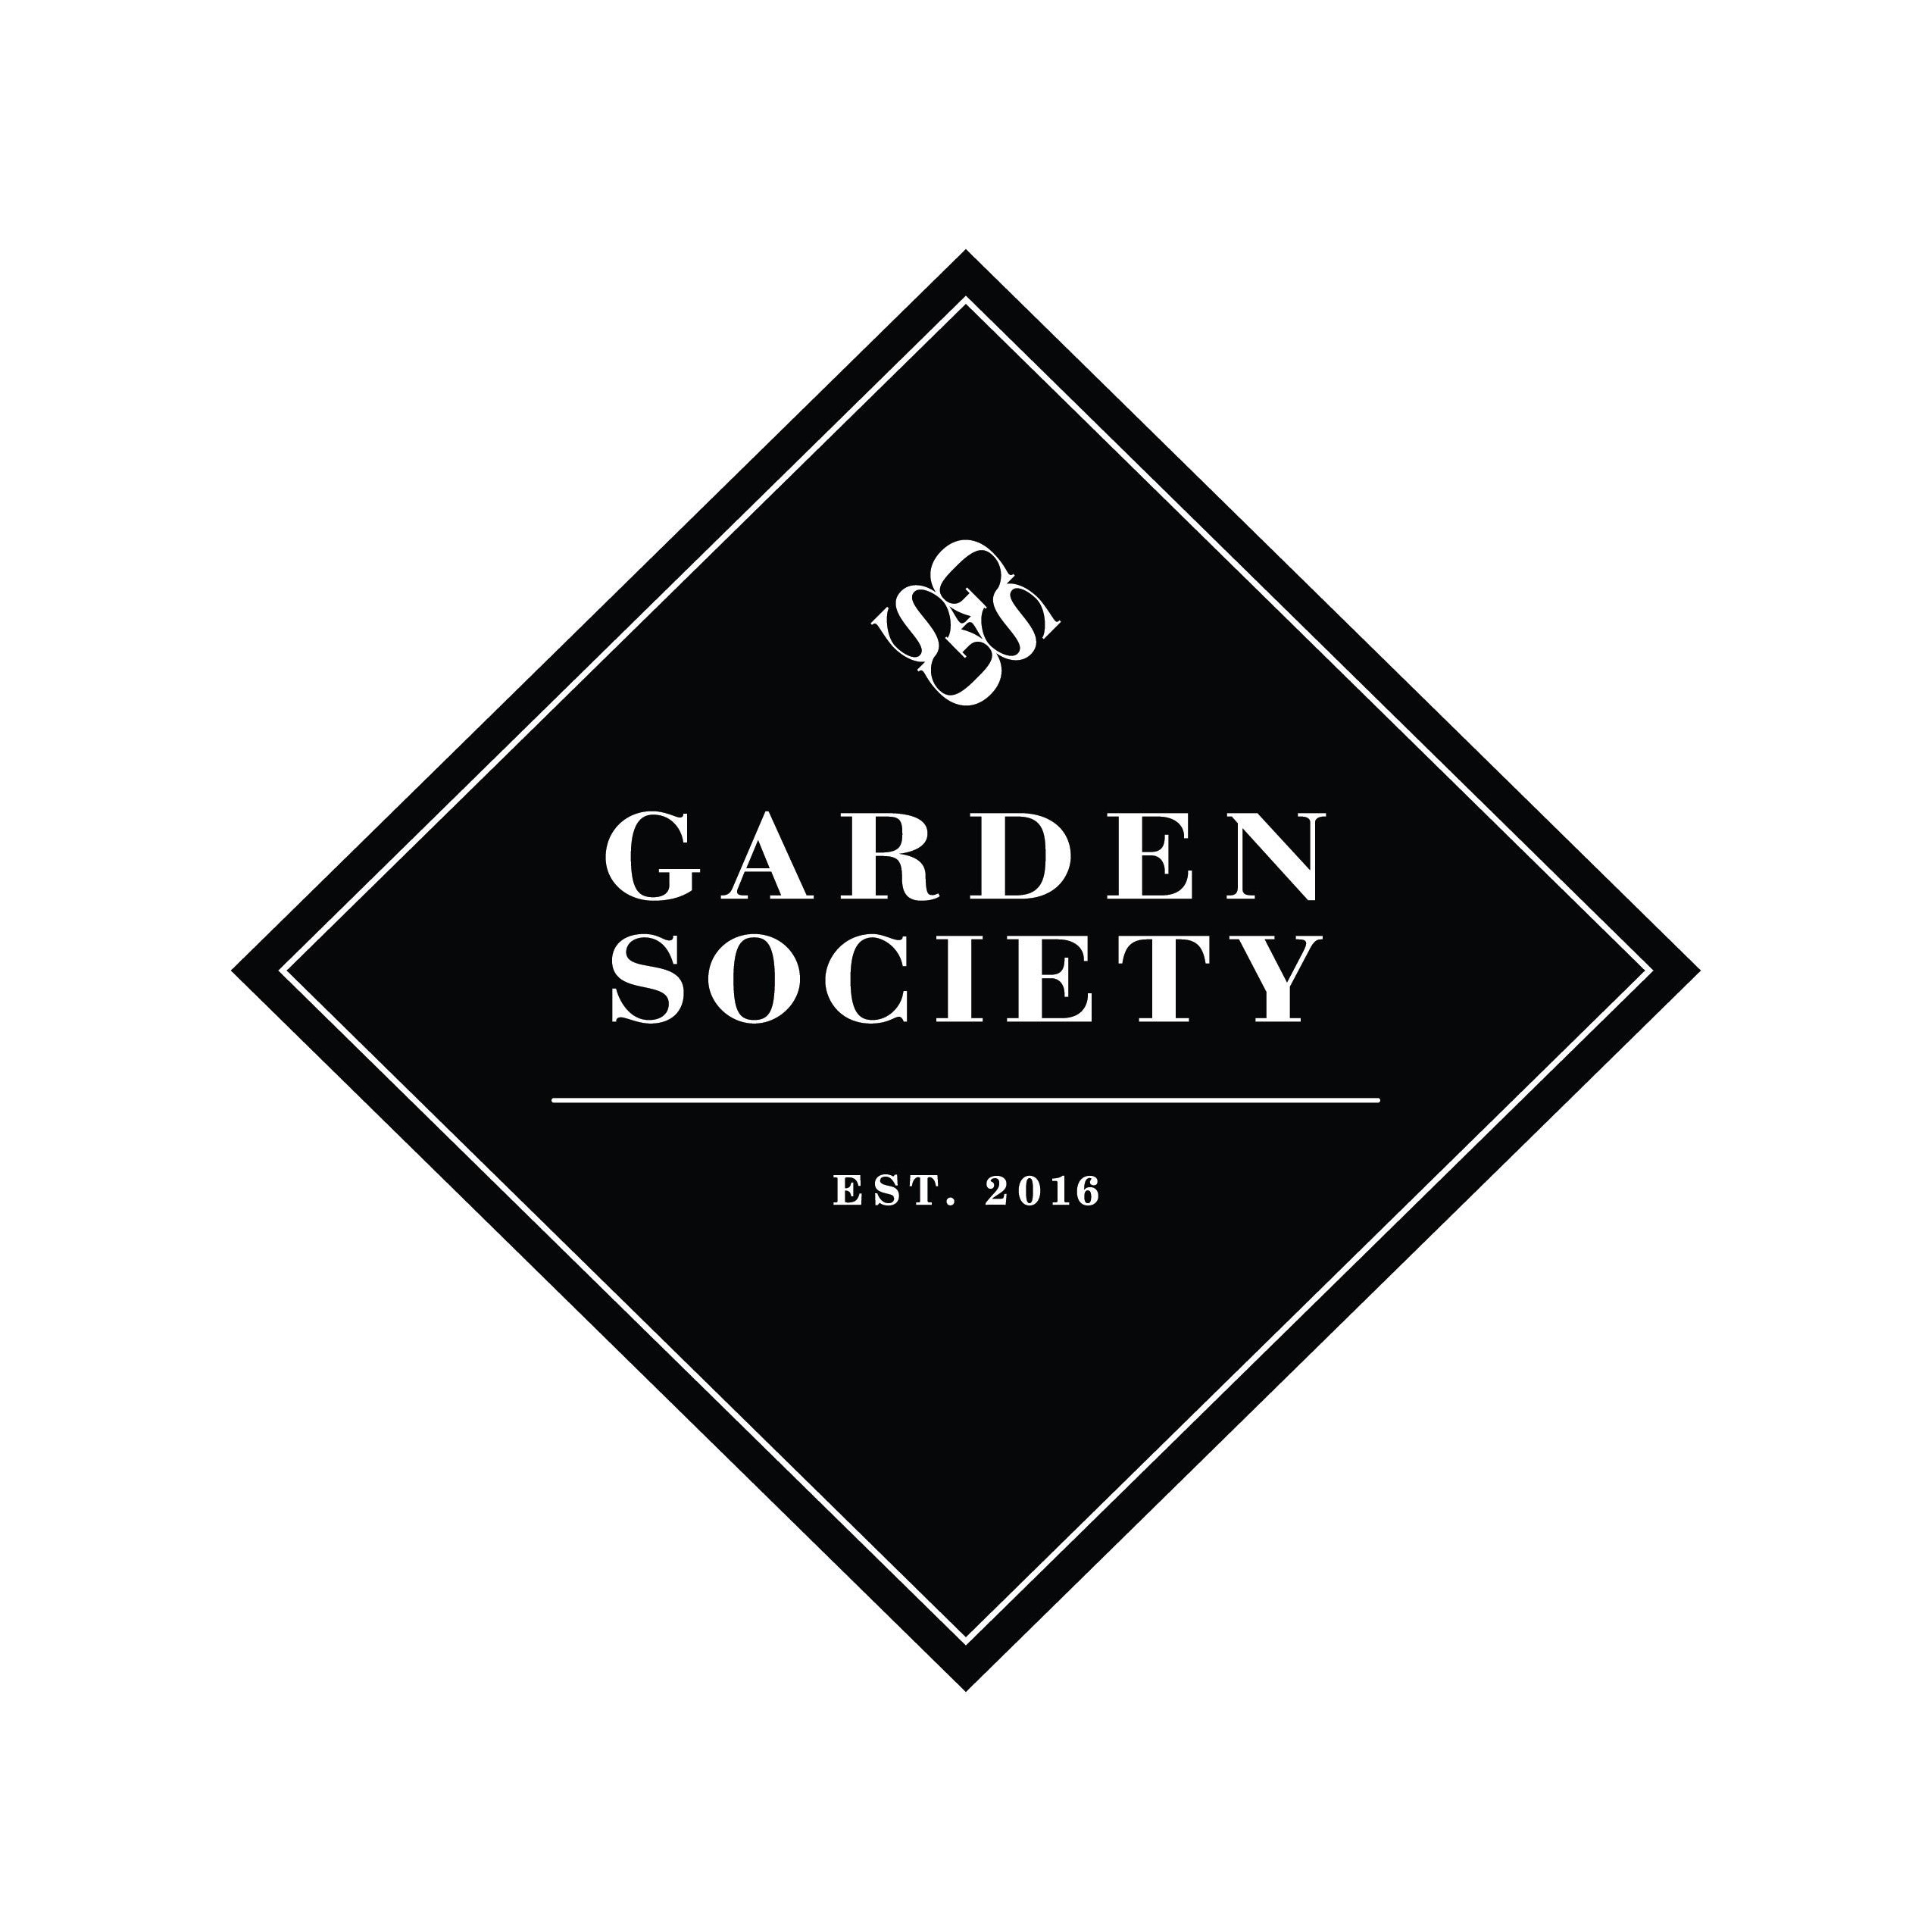 The logo of Garden Society